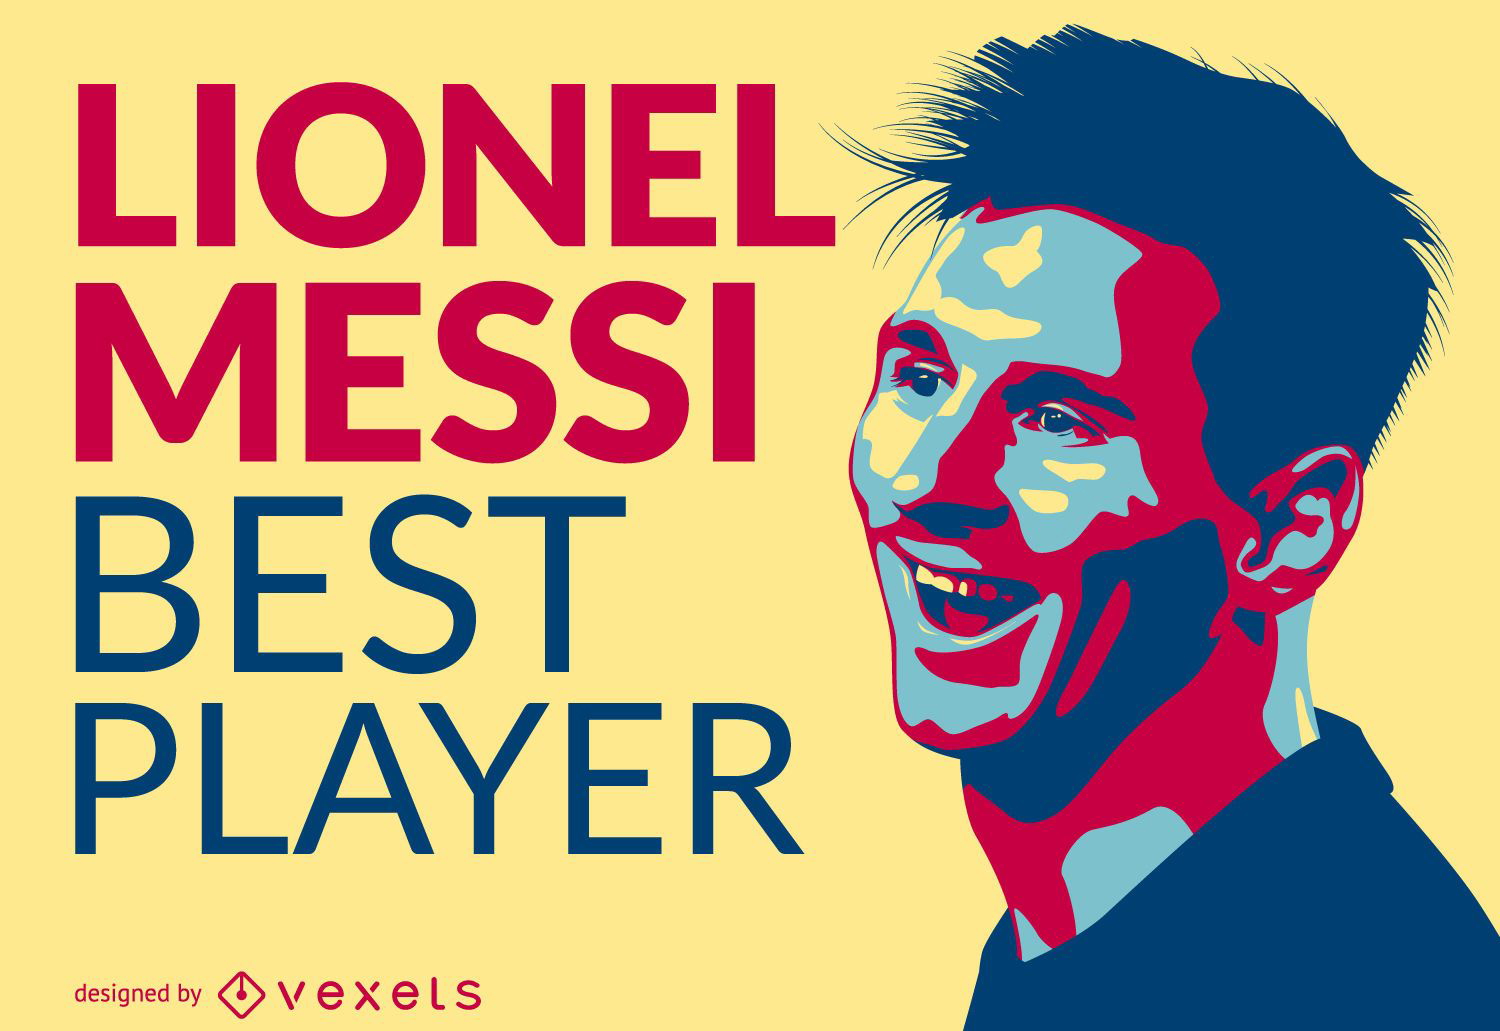 Ilustração do melhor jogador de Lionel Messi